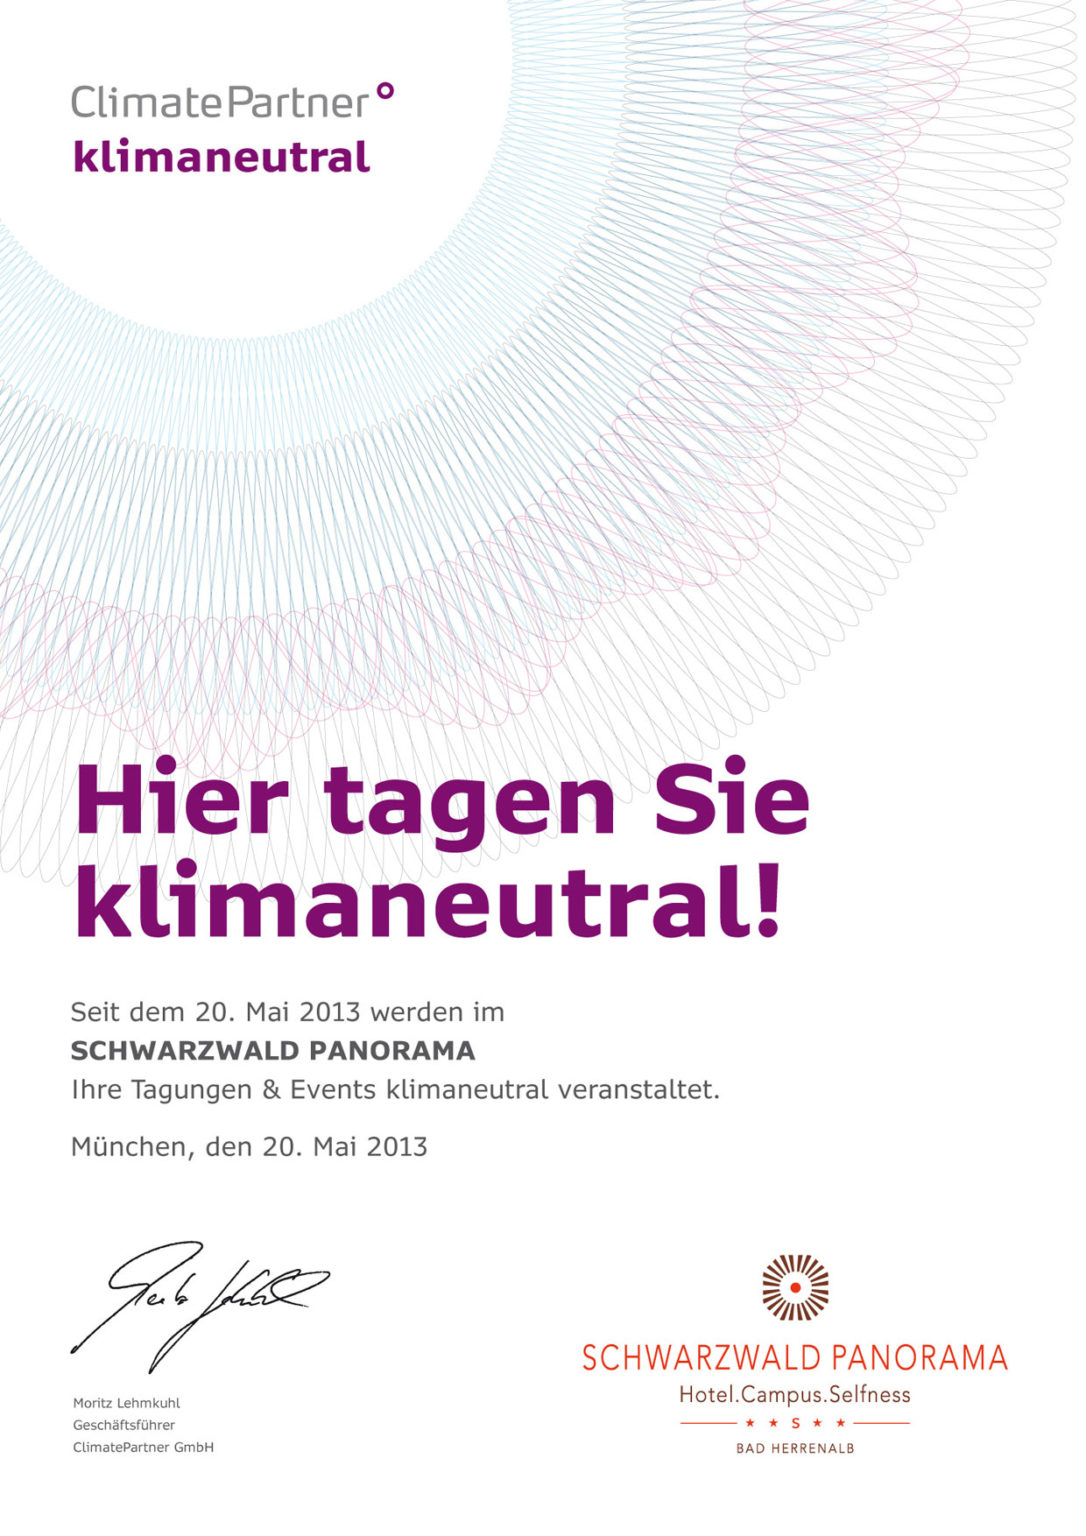 Zertifikat von Climate Partner für klimaneutrale Tagungen im Hotel Schwarzwald Panorama